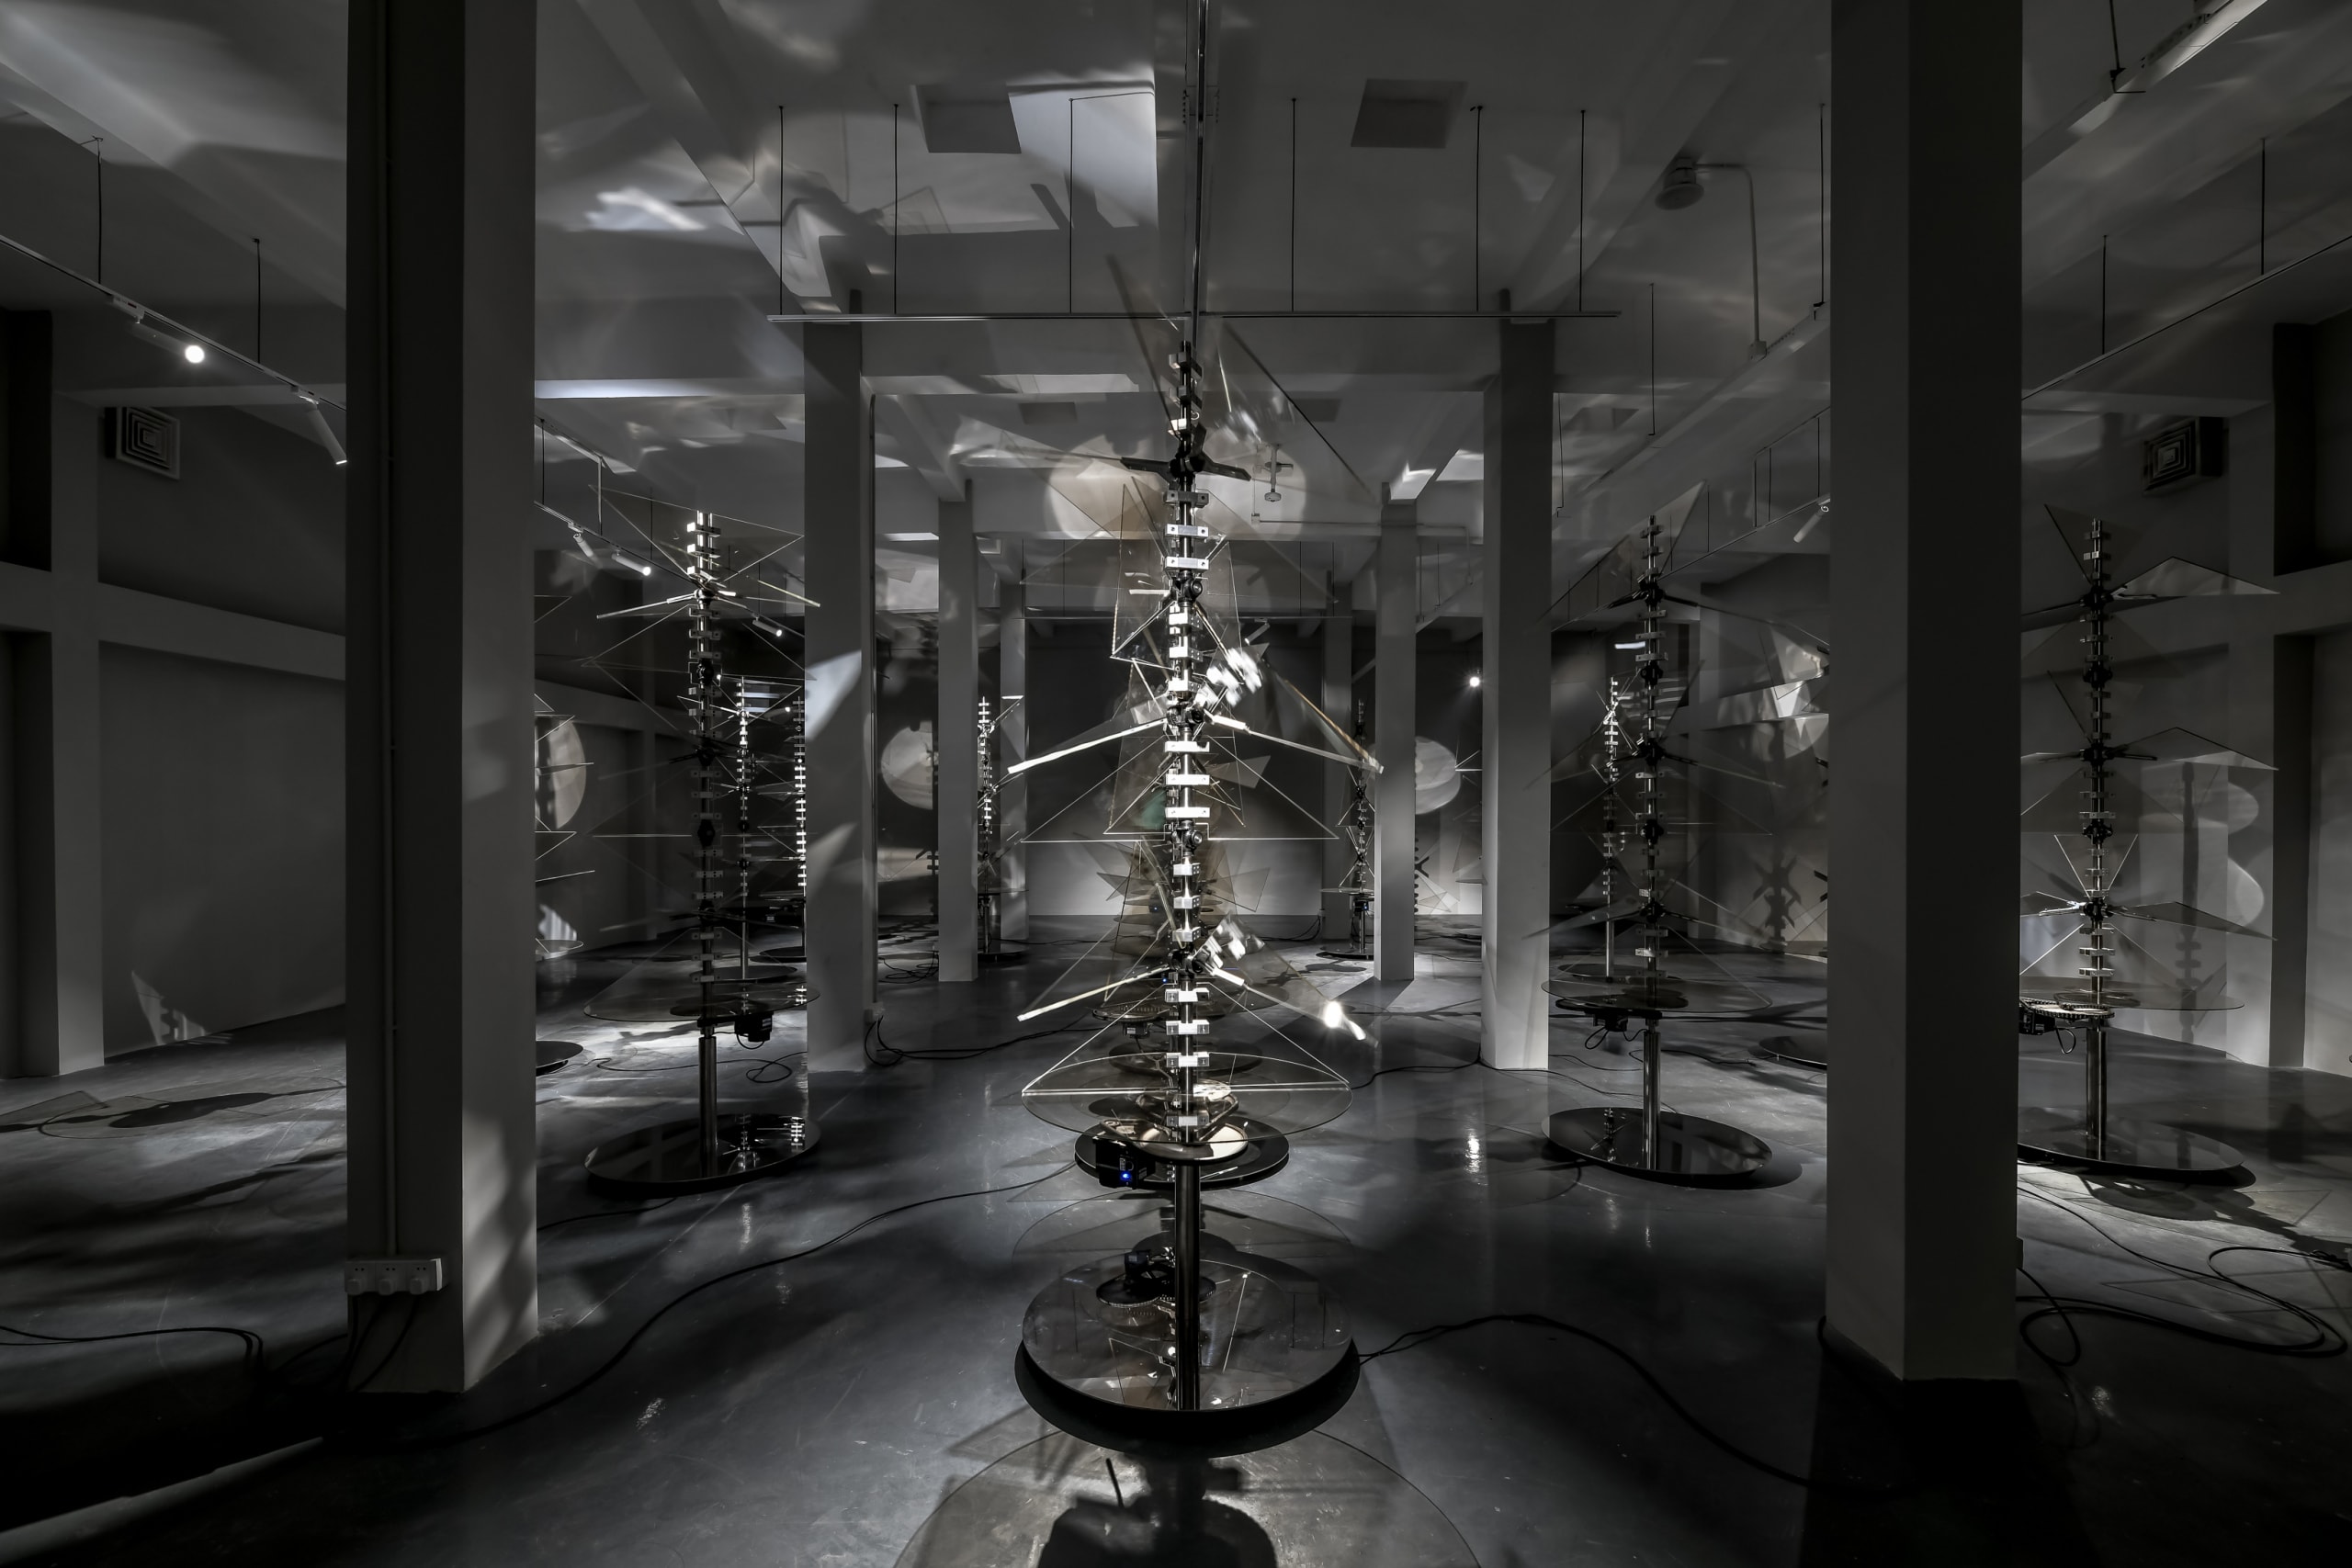 率先走进上海玻璃博物馆「退火」五周年特别大展「重置」